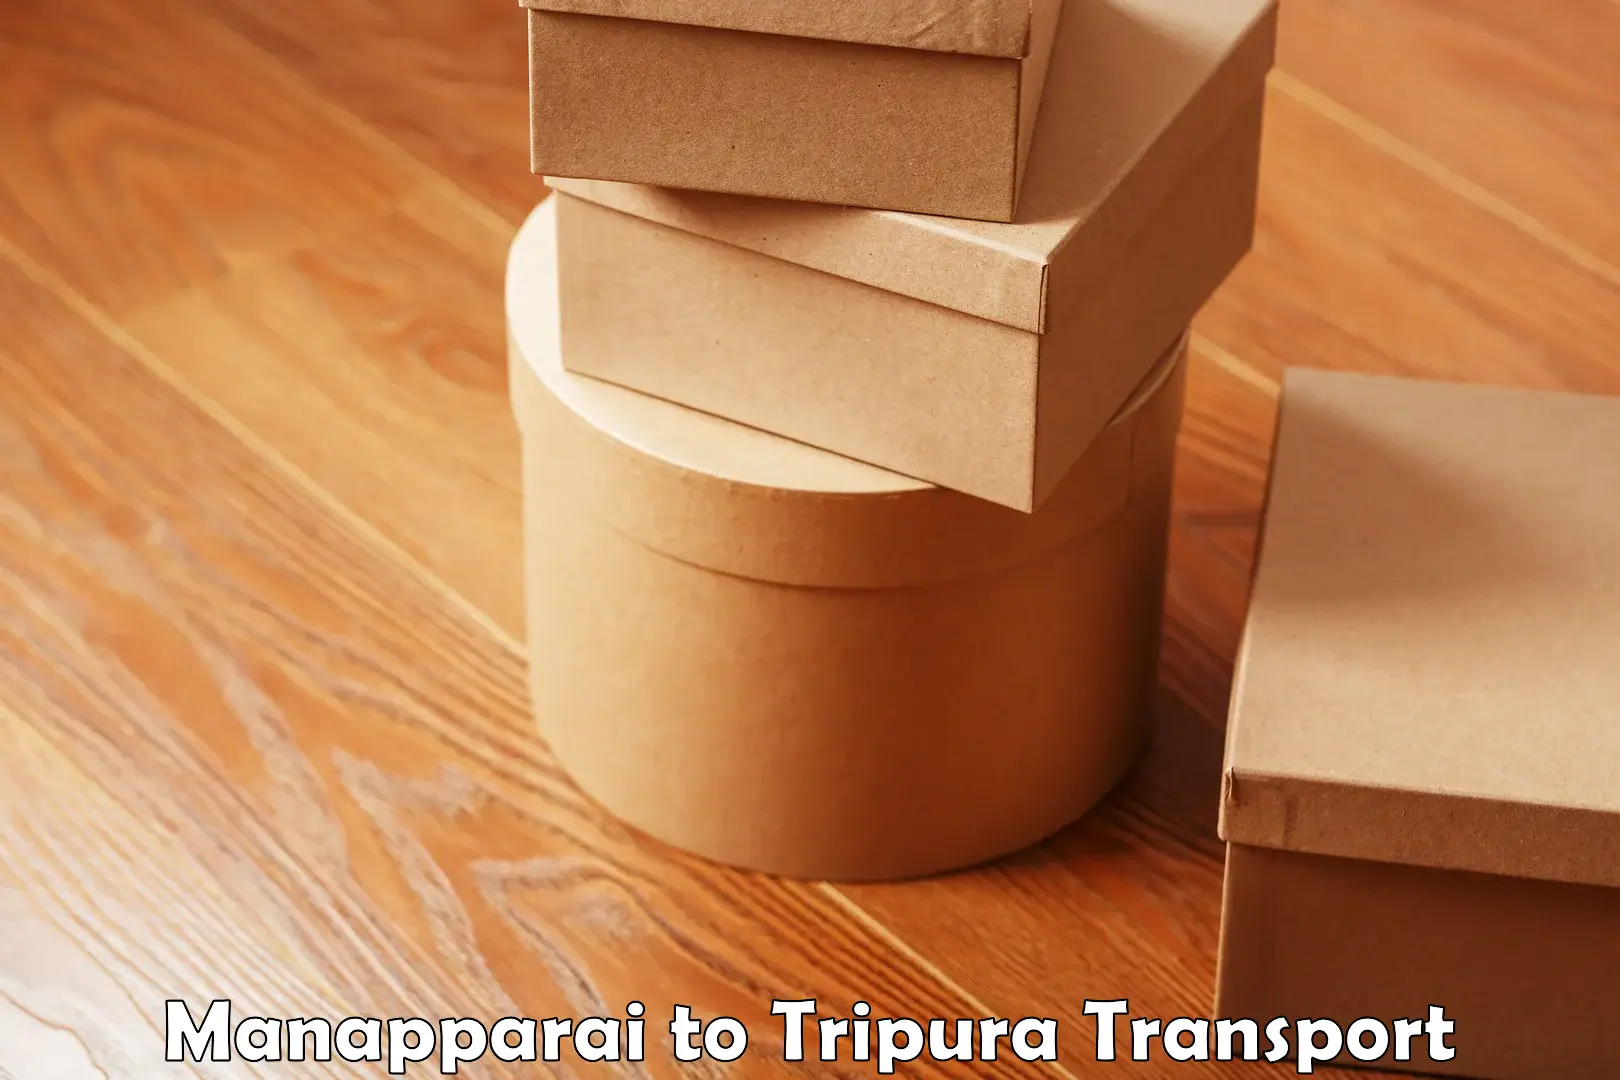 Furniture transport service in Manapparai to Tripura